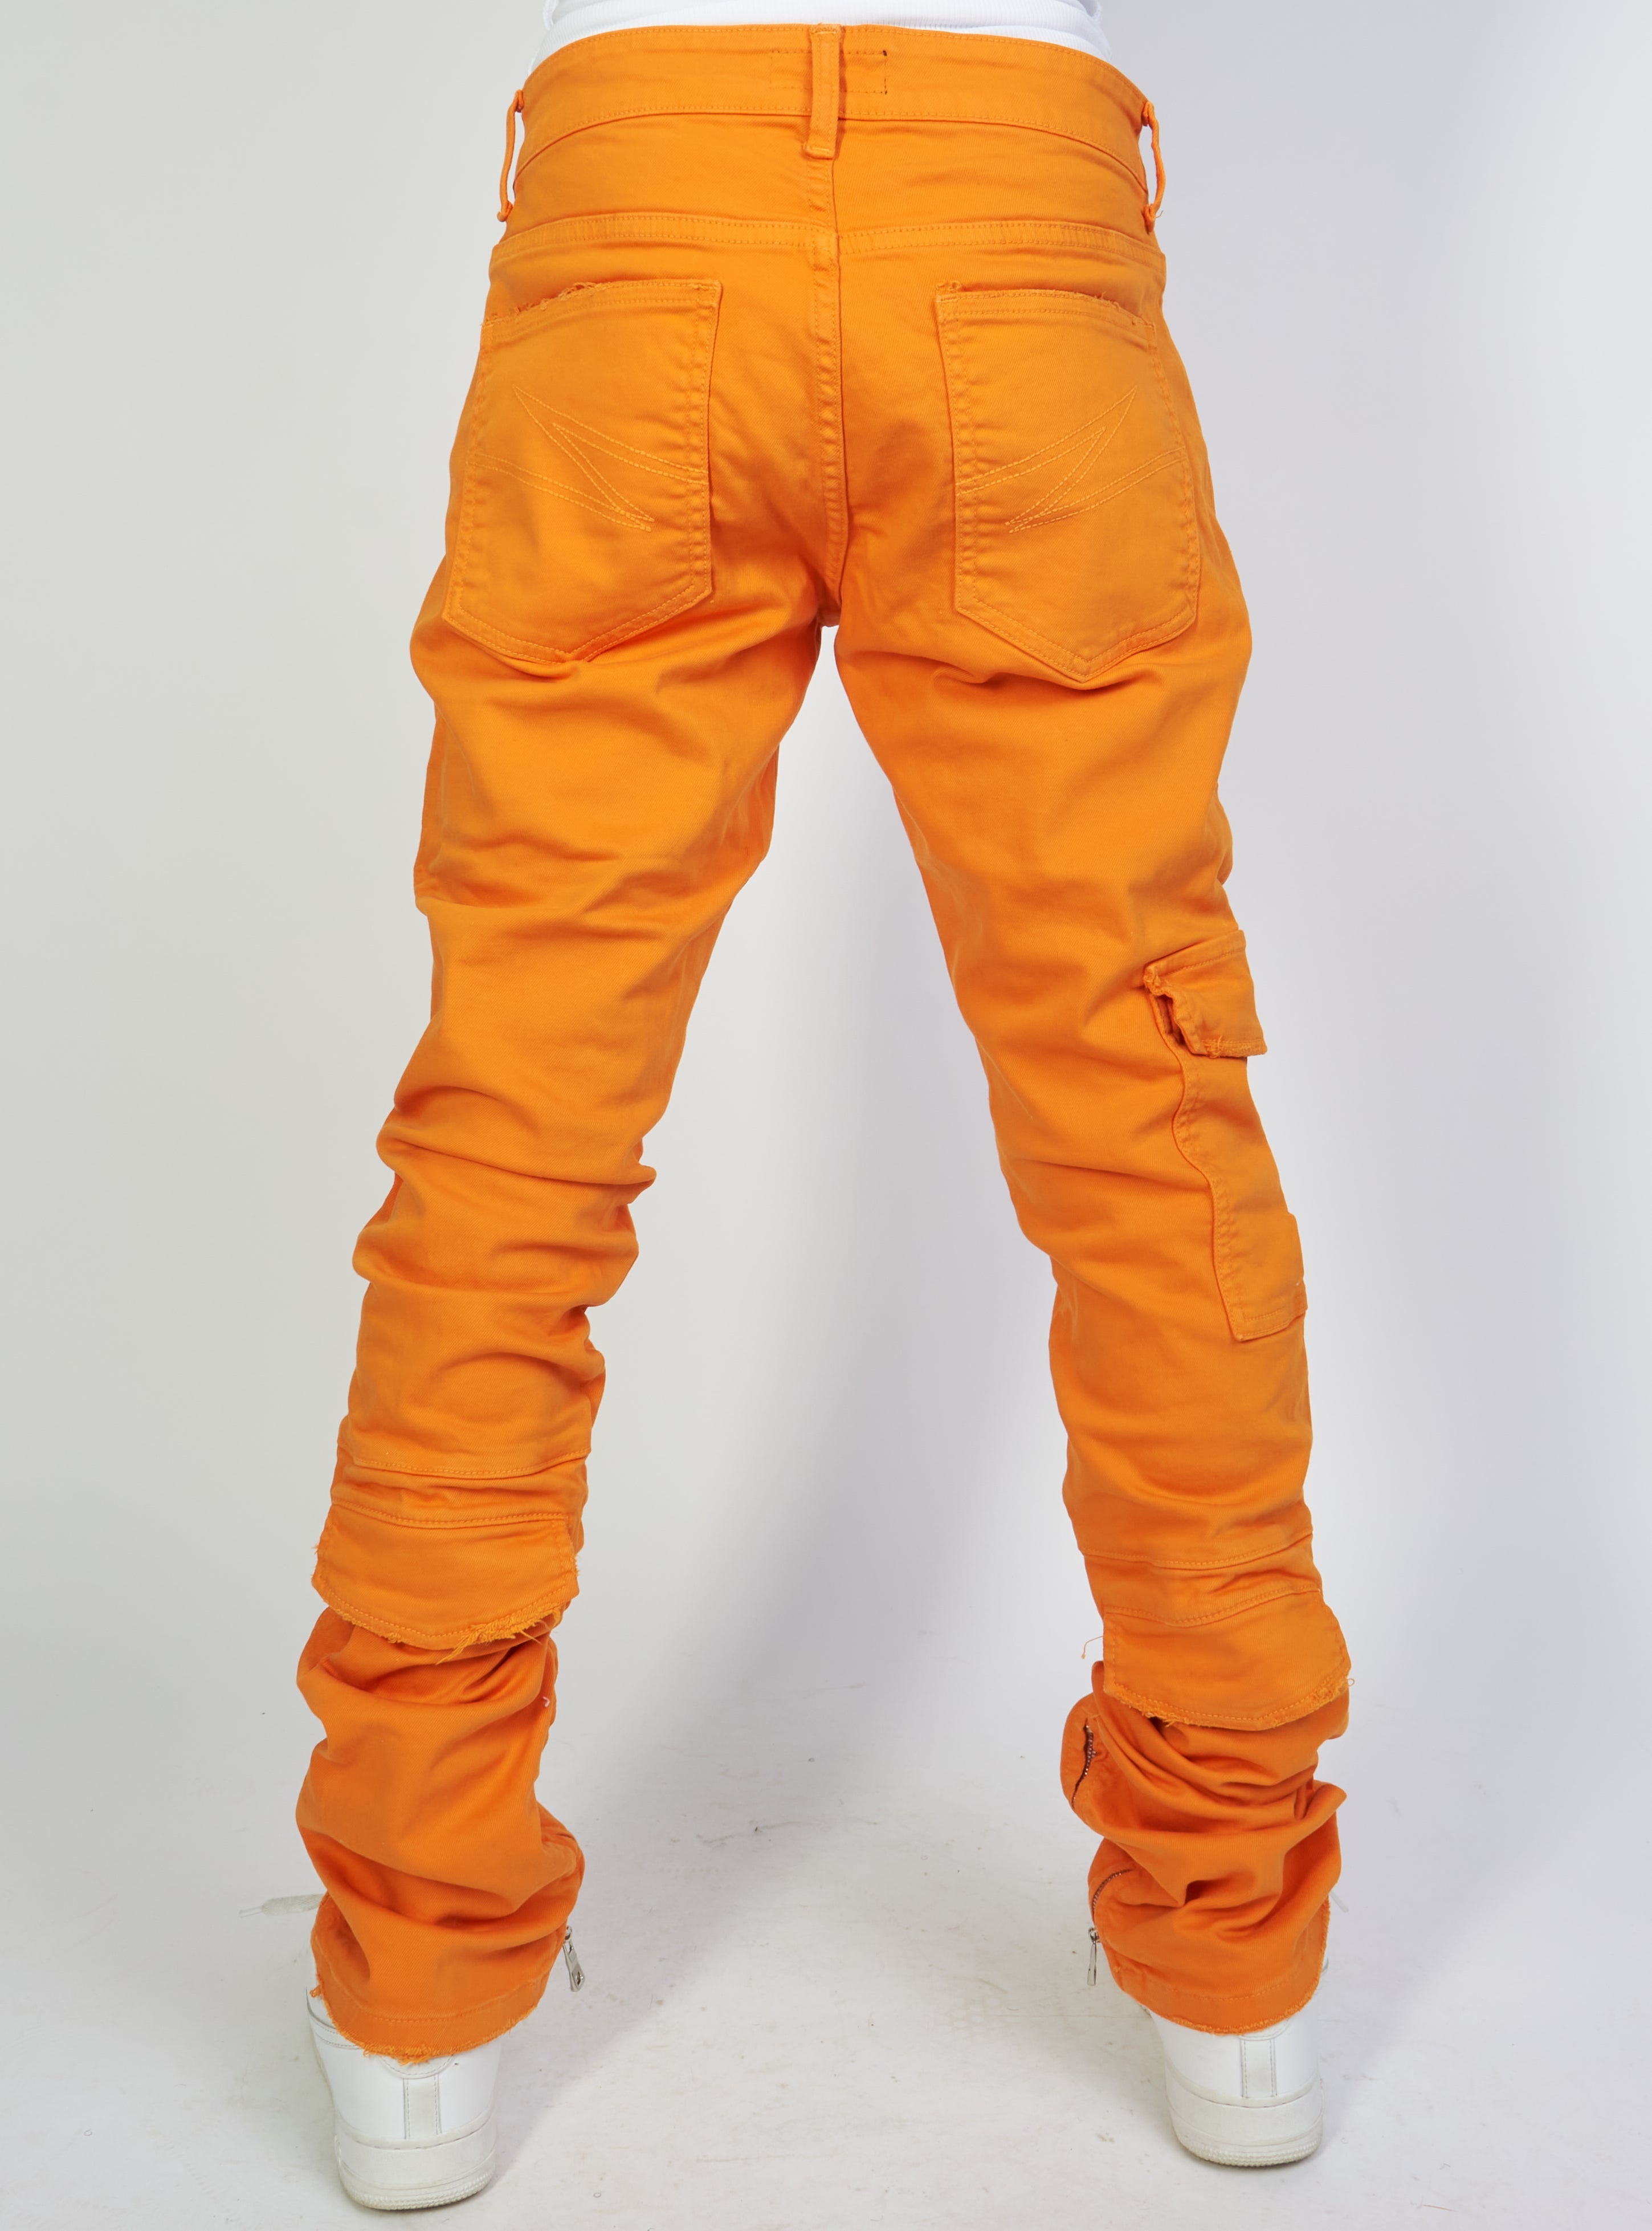 Valabasas - Stacked Apex Jeans - Orange | Clique Apparel